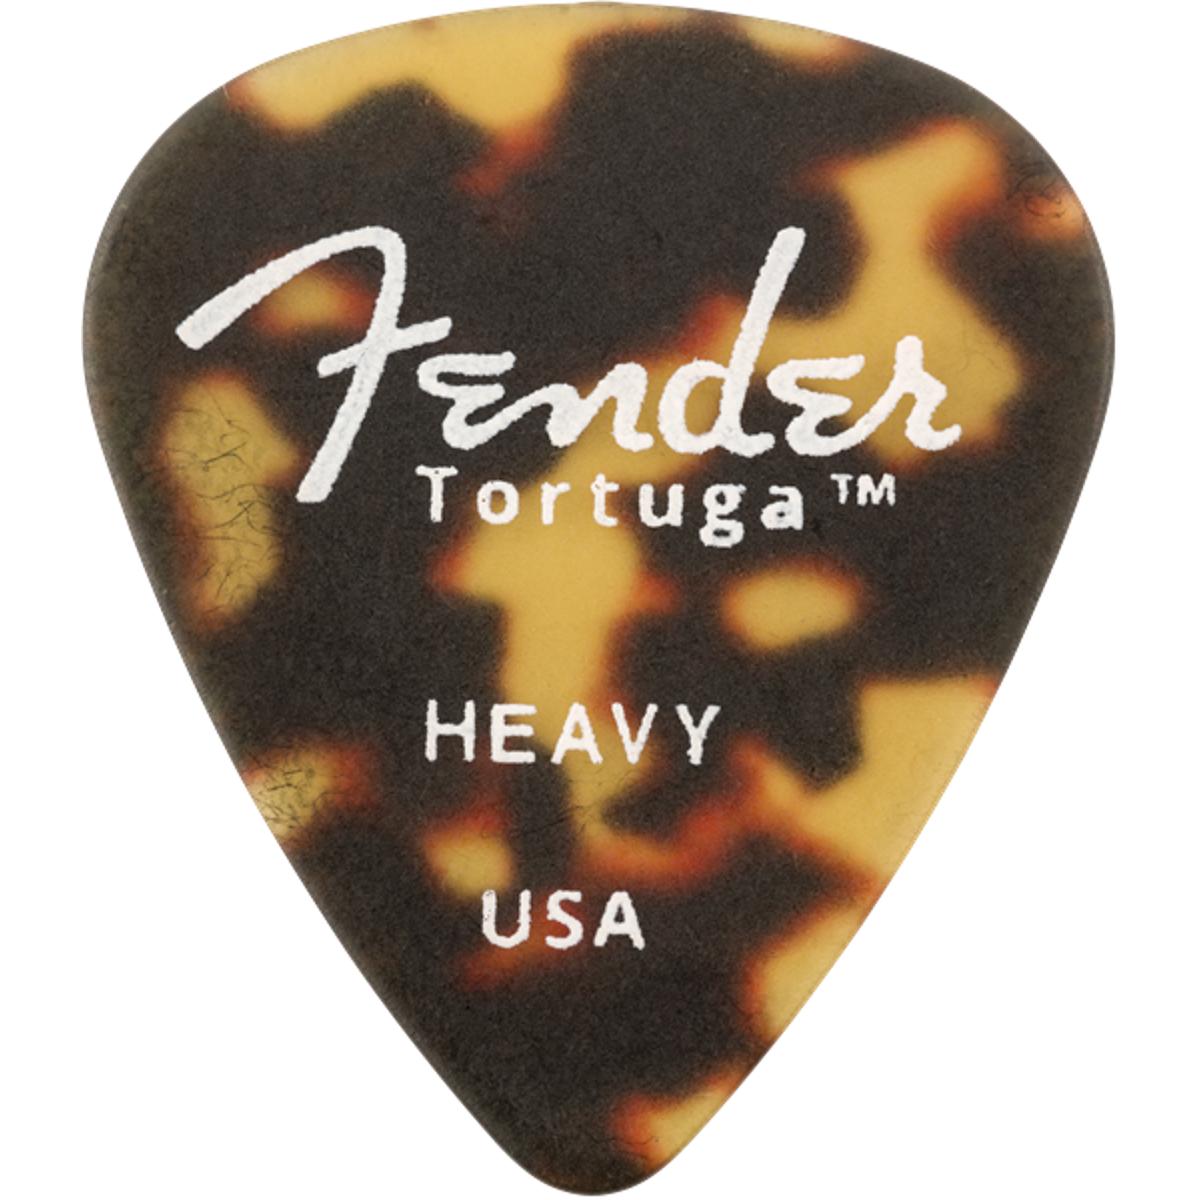 Fender Tortuga 351 Shape Guitar Picks Heavy 6-Pack - 0980351525